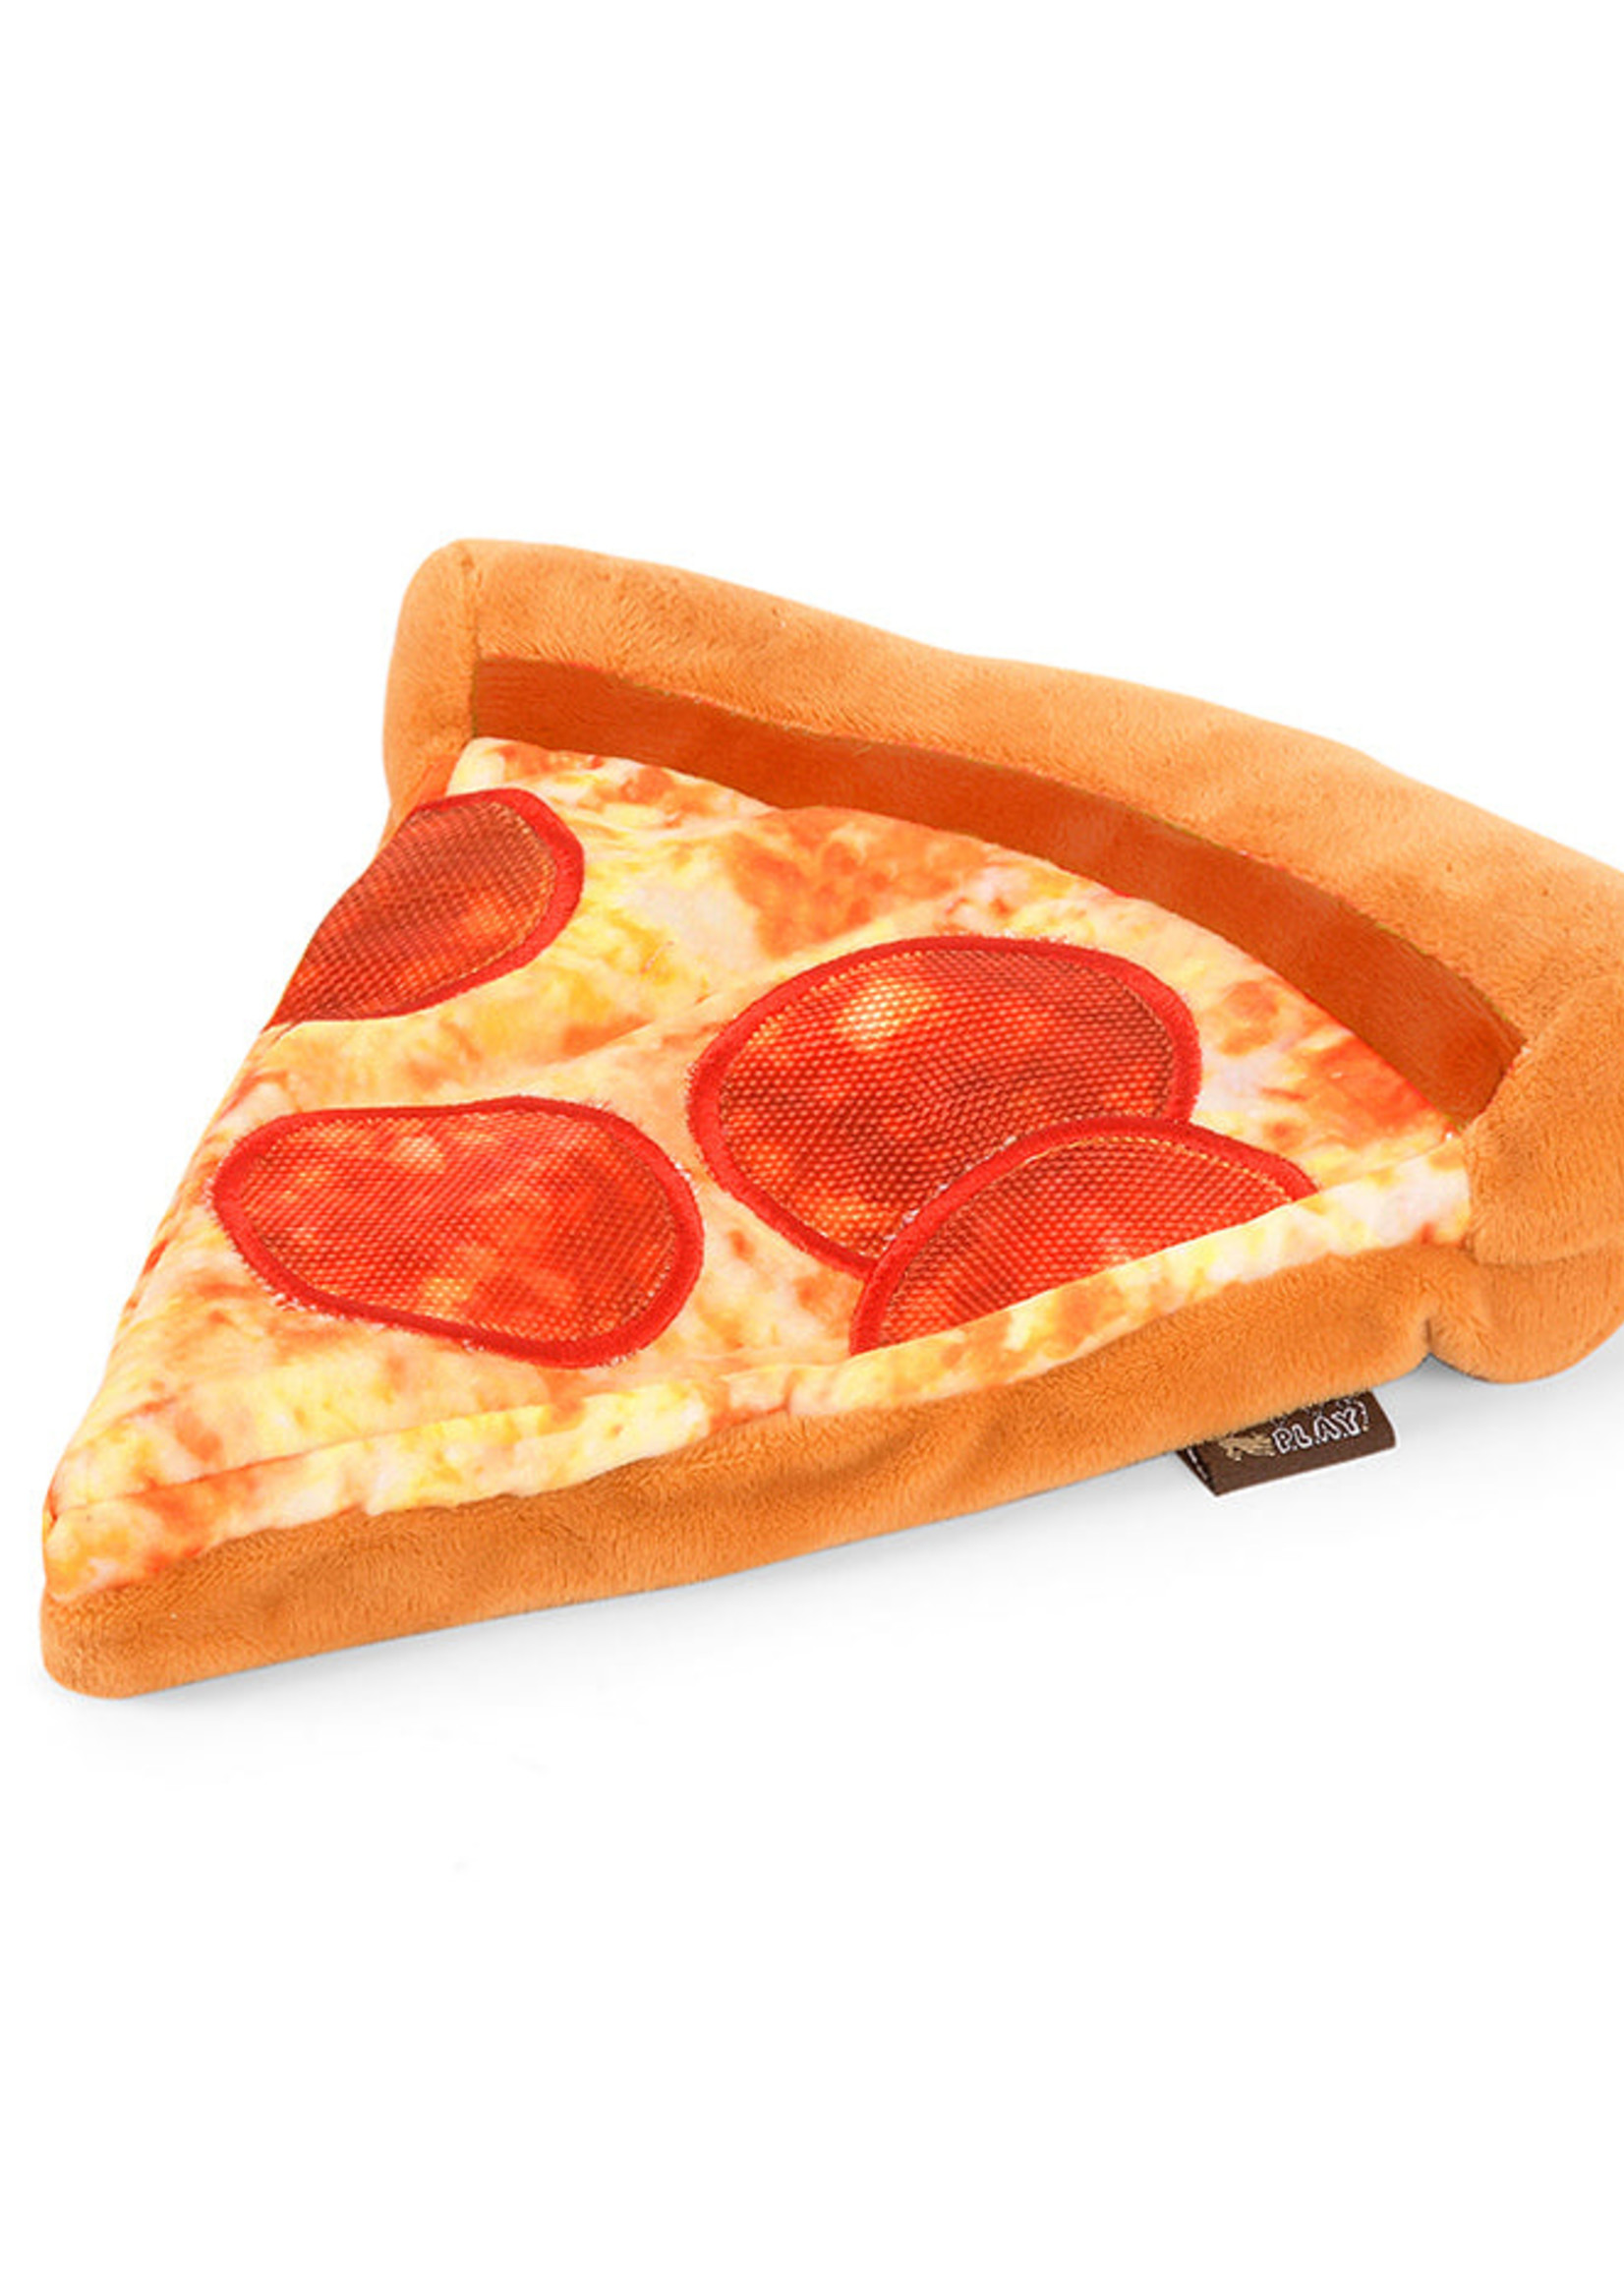 P.L.A.Y.  Snack Attack Pizza